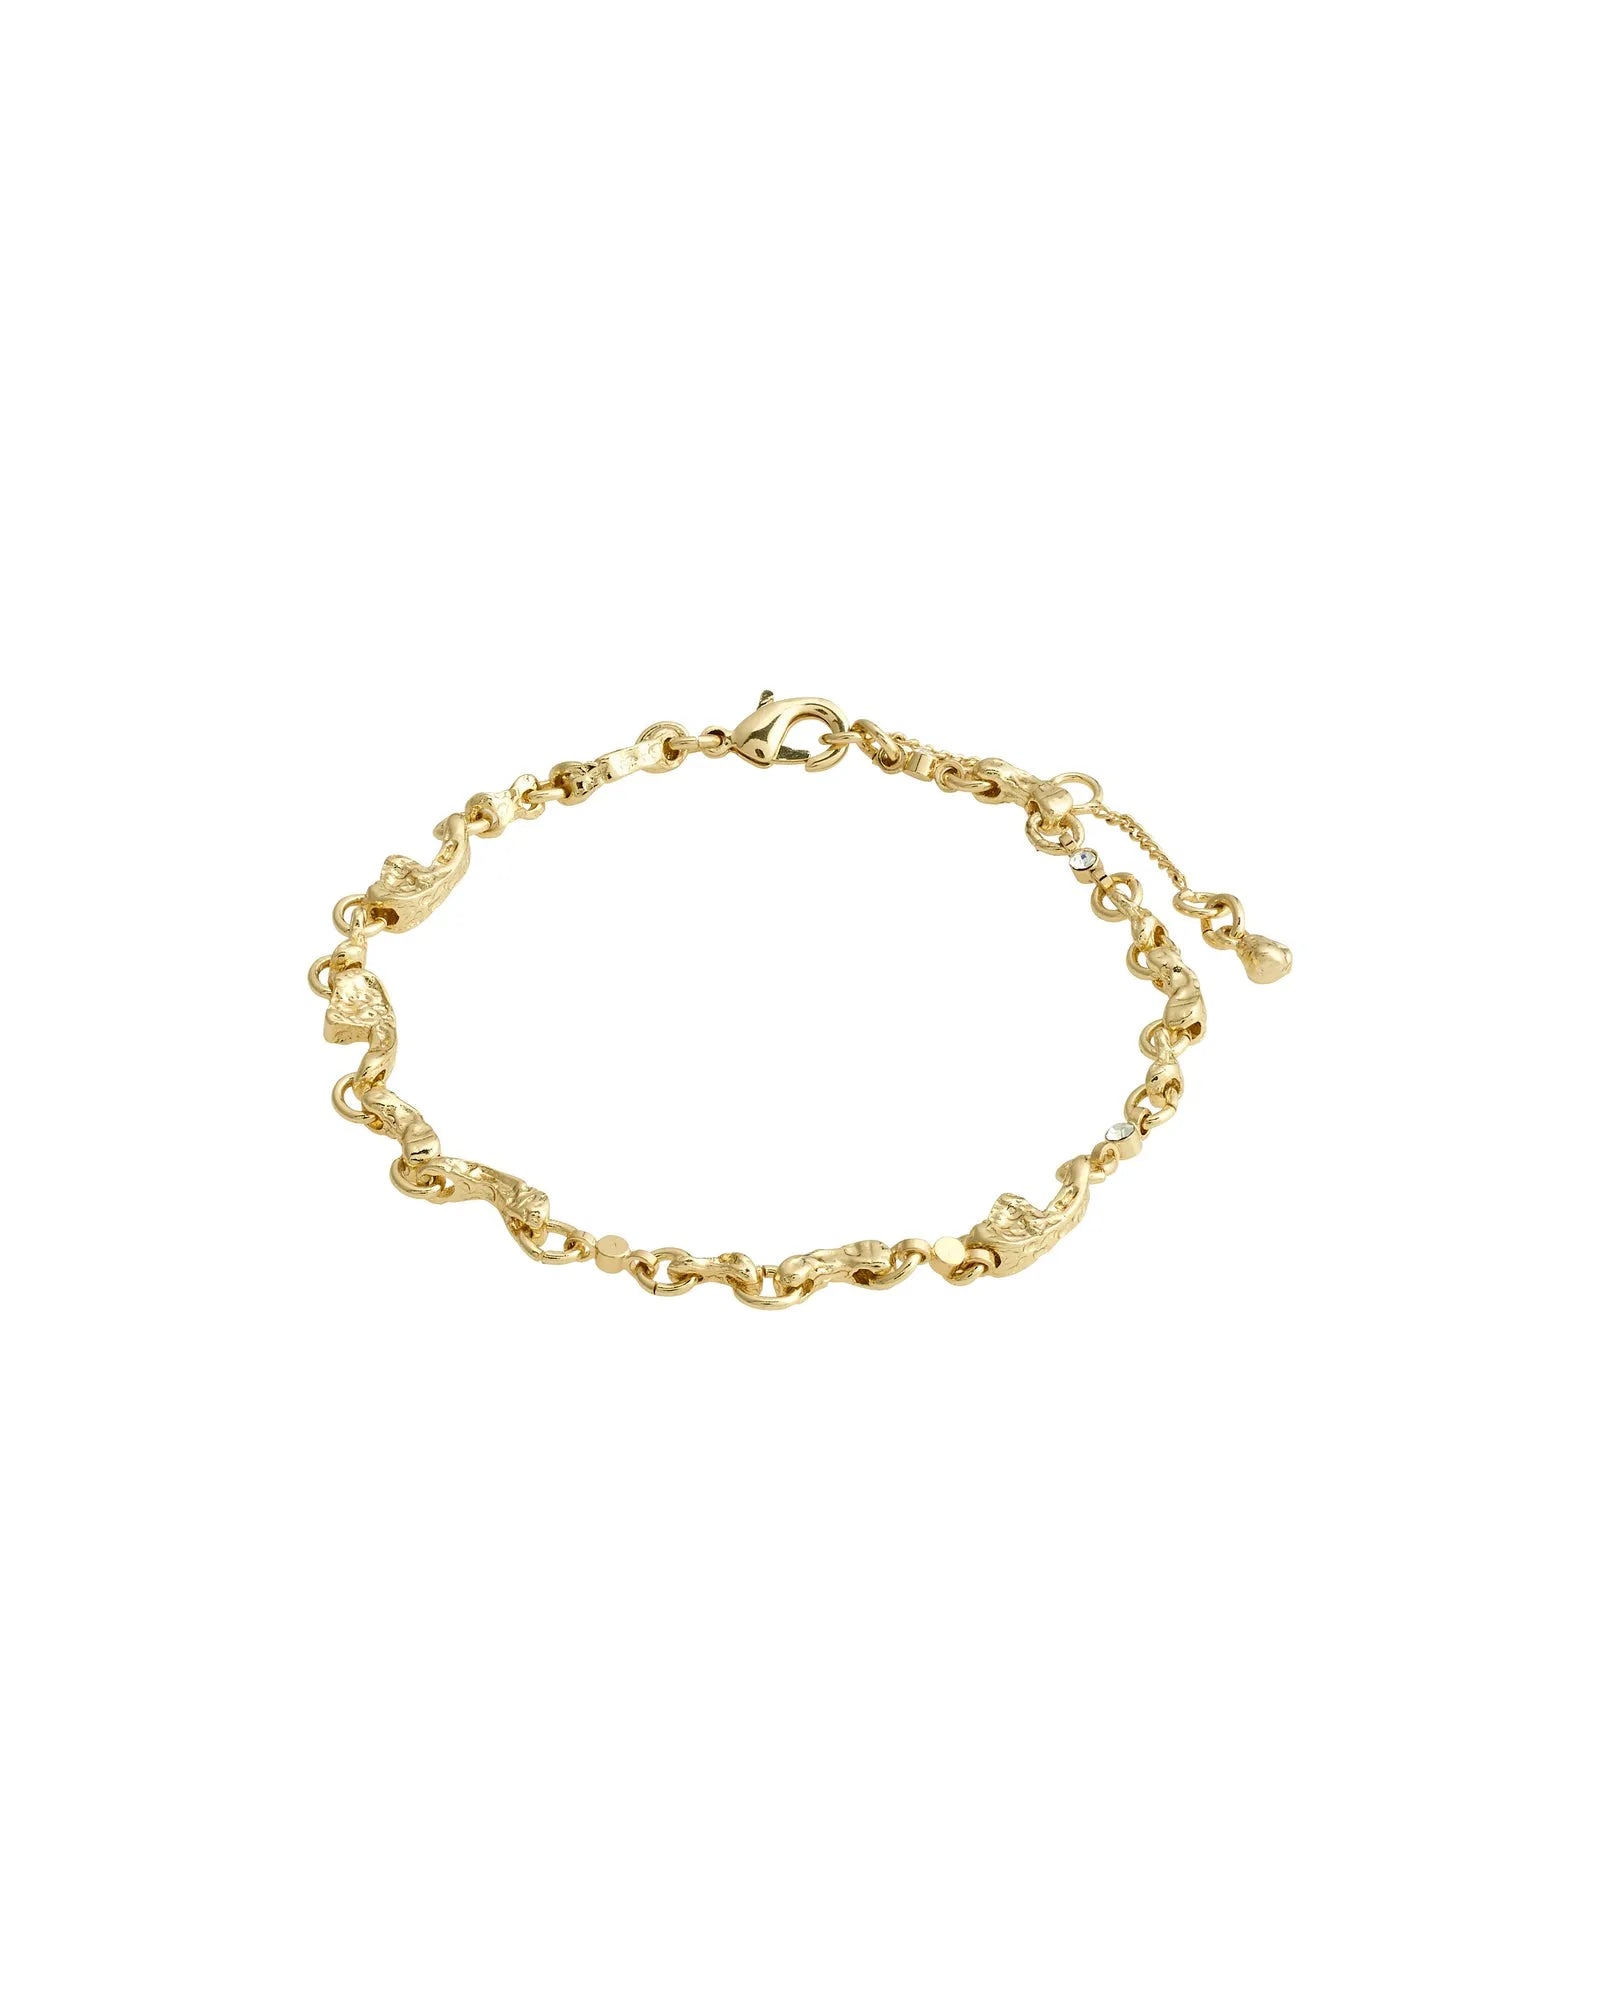 HALLIE Bracelet - Gold Plated